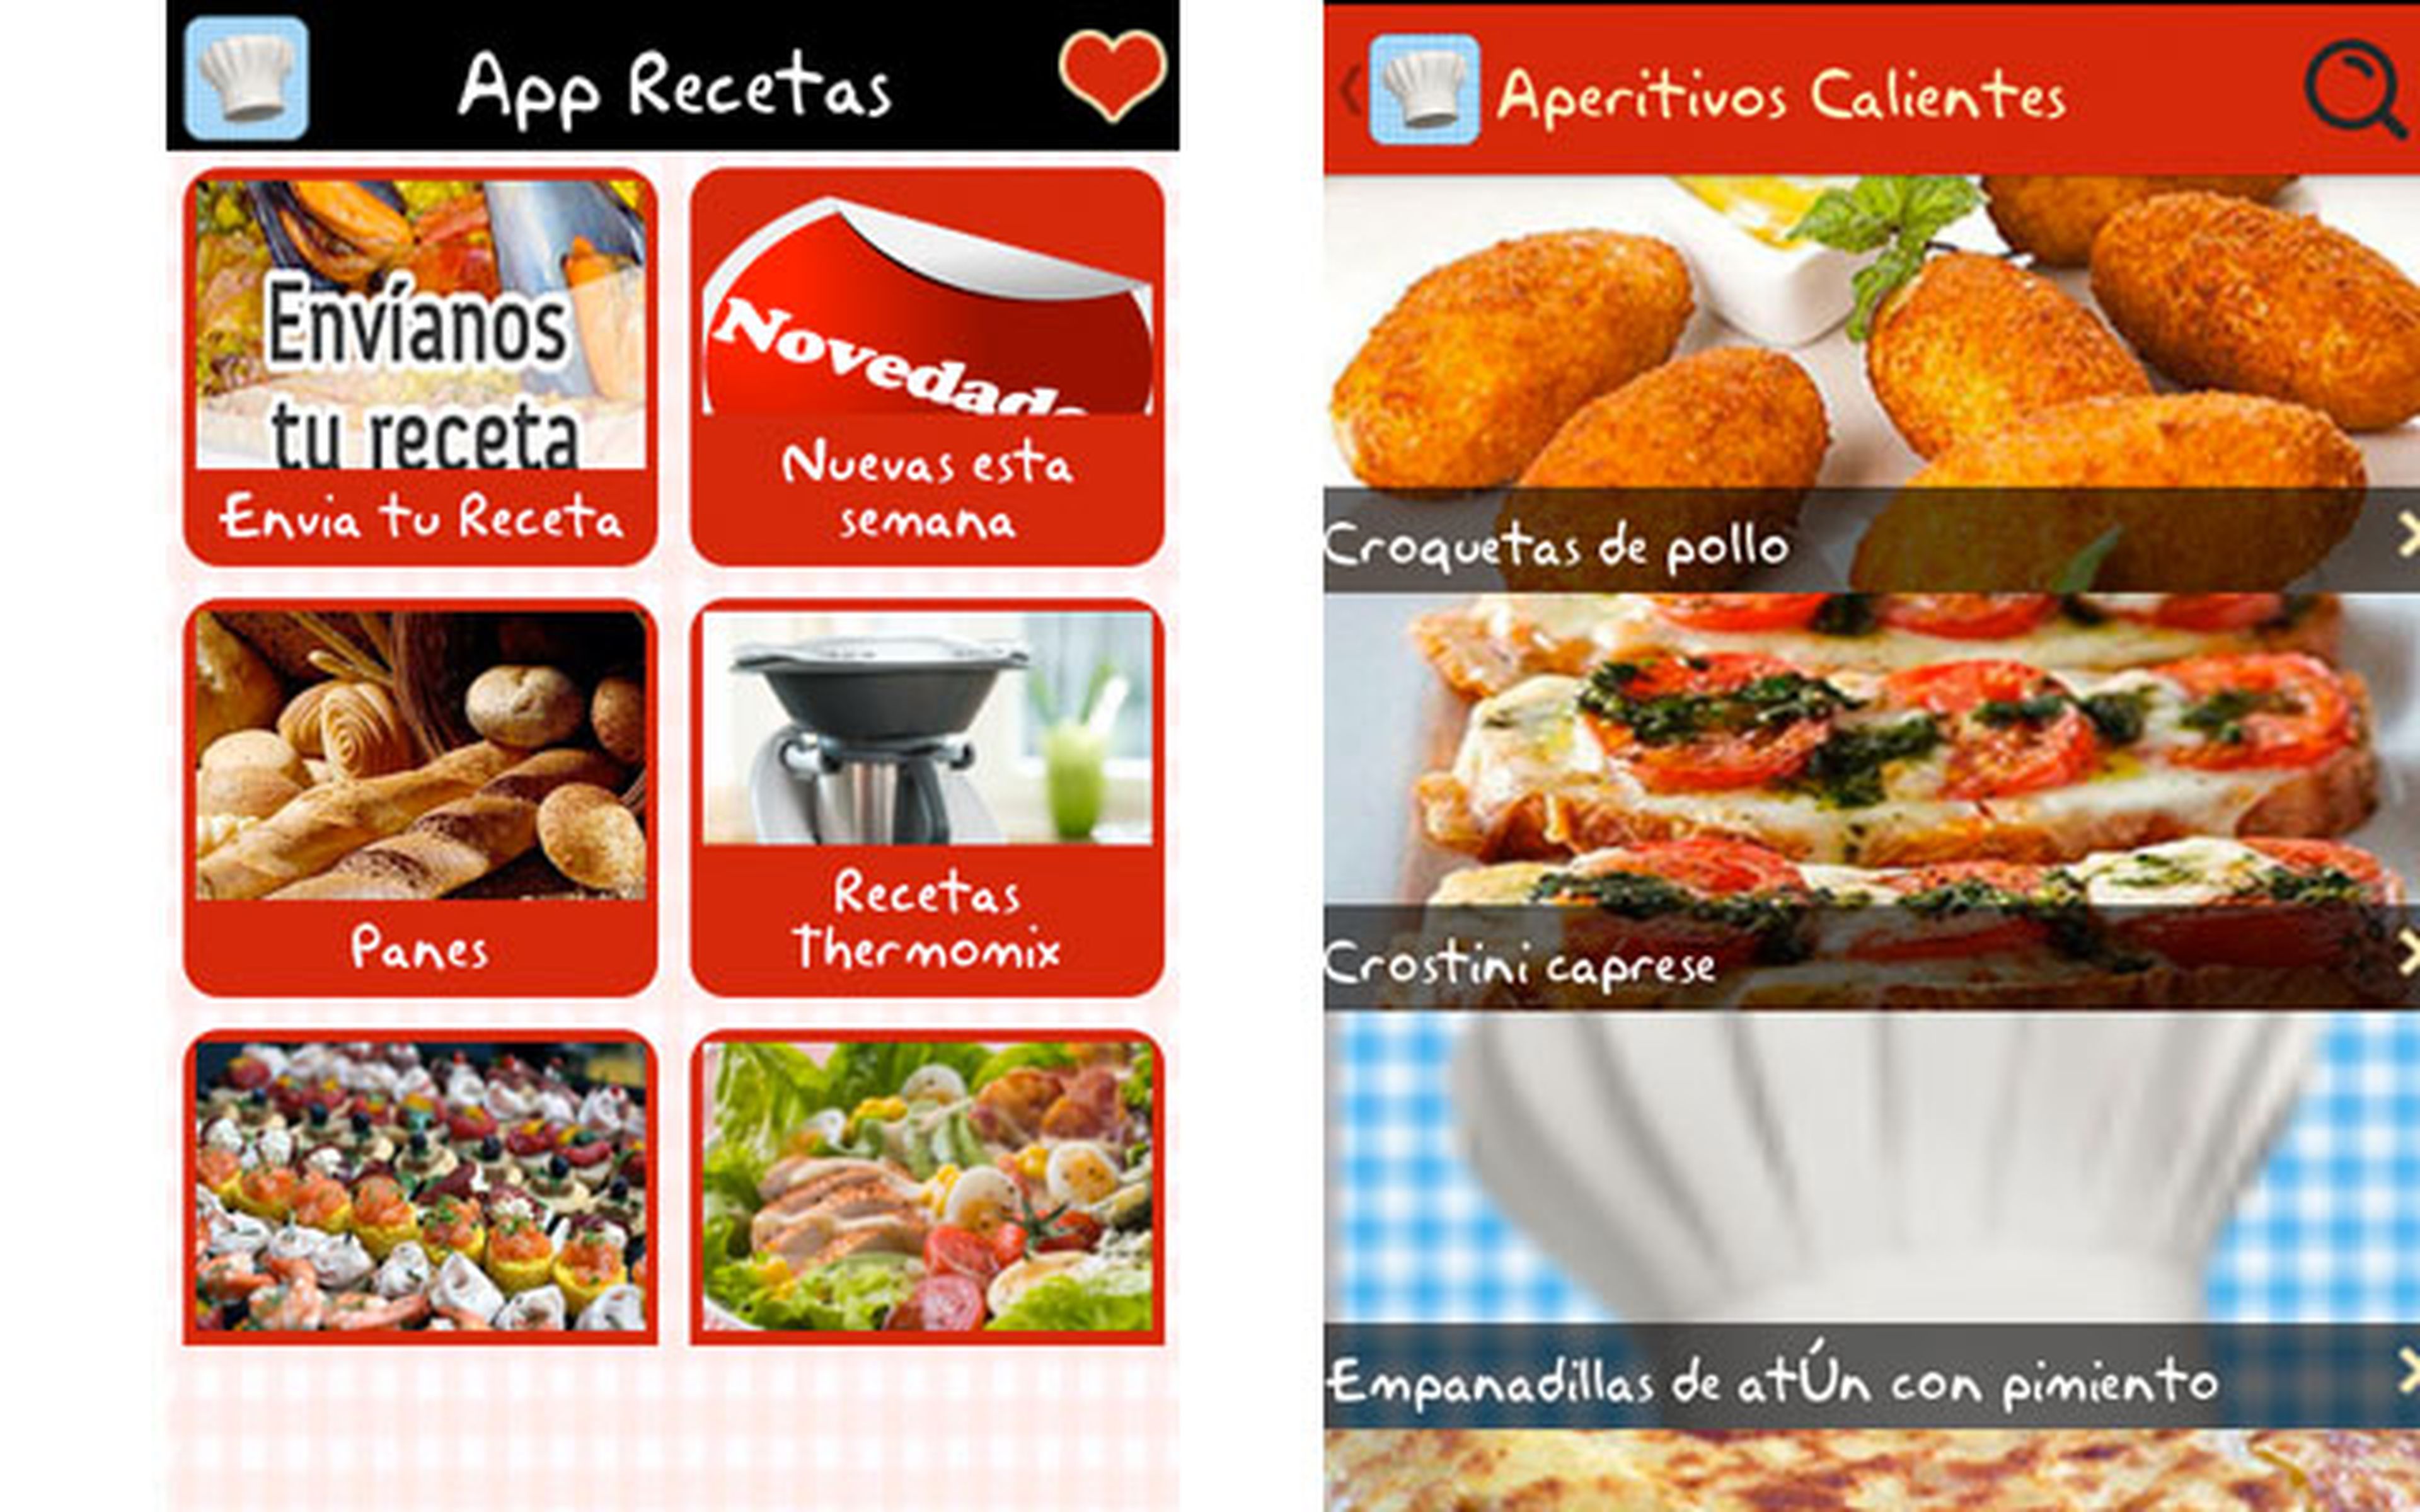 App Recetas